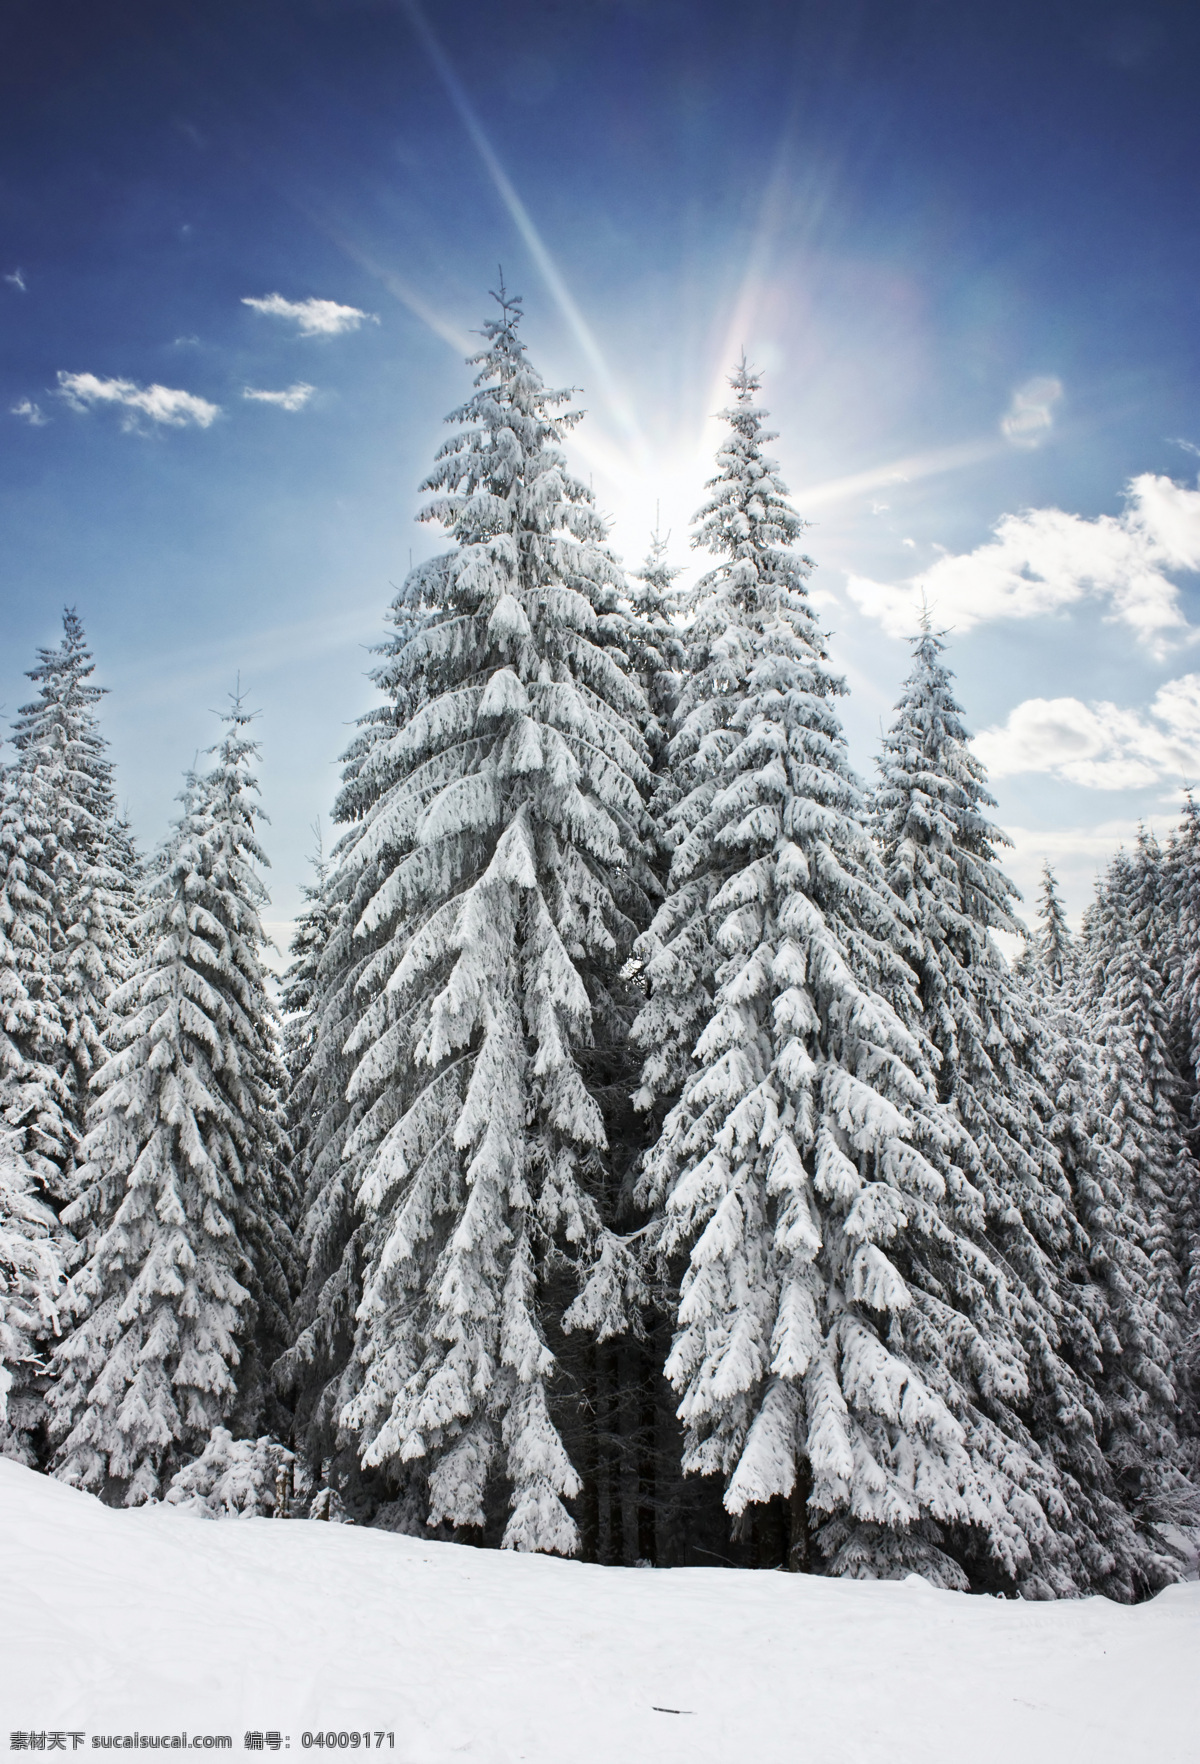 美丽 冬天 雪景 圣诞节 冬季 美丽风景 树林 森林 白雪 雪景图片 风景图片